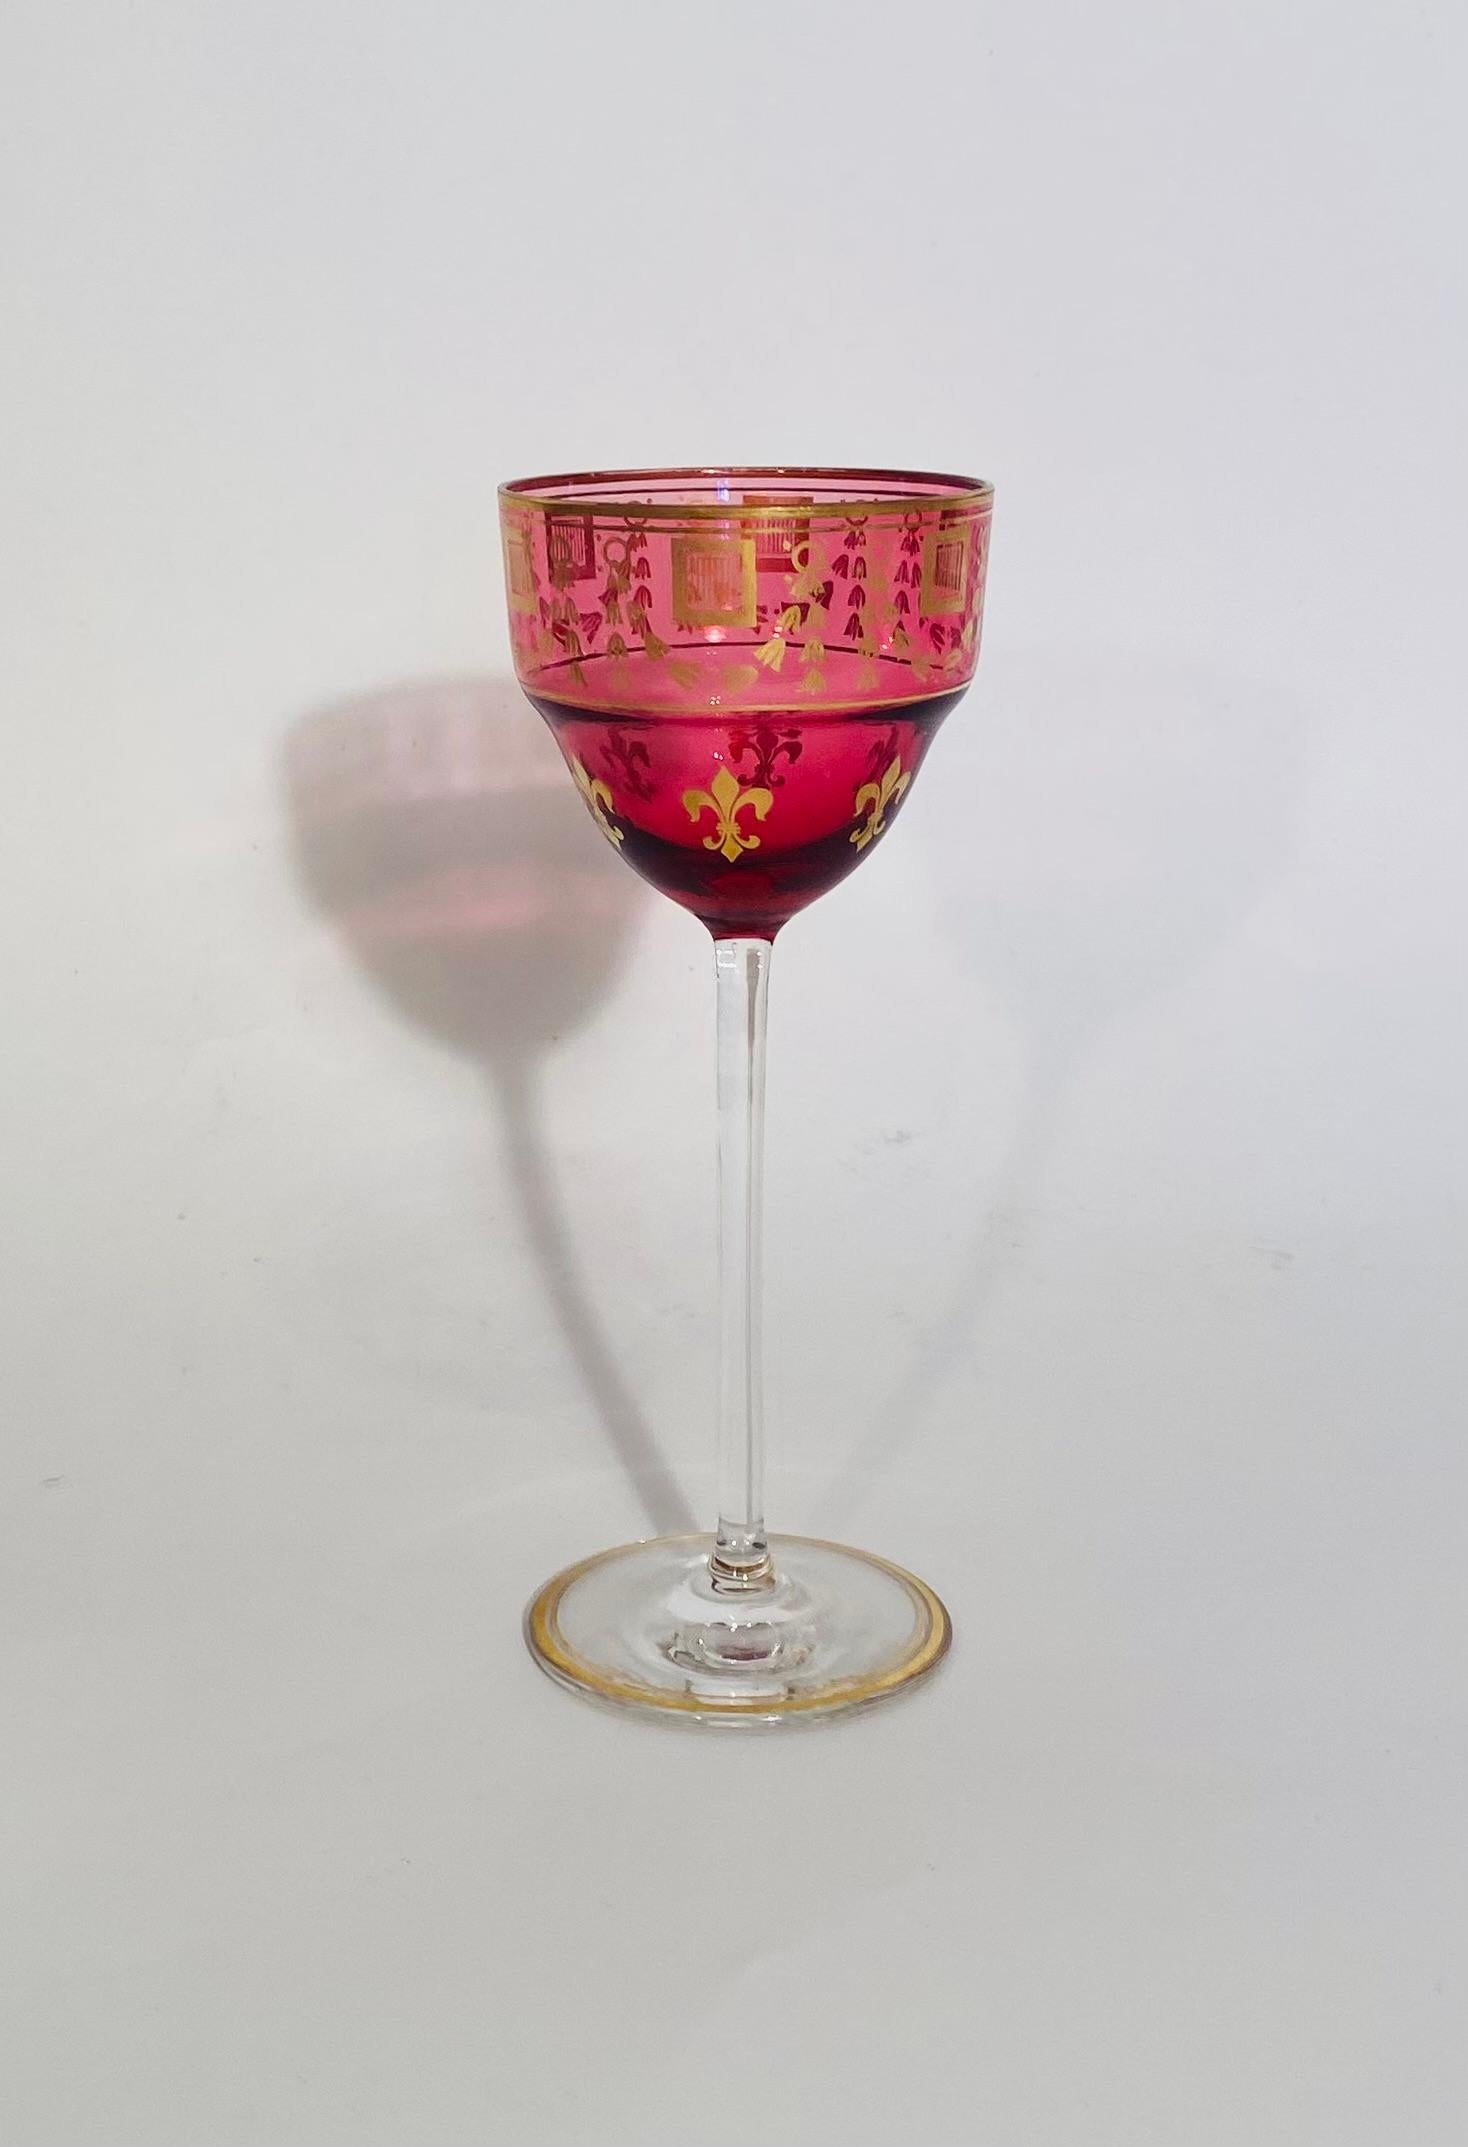 Un vibrante juego de copas de vino de color rojo rubí y un interesante dorado con un diseño de flor de lis. Bonito y alto y en muy buen estado antiguo. Lo atribuimos a una de las mejores cristalerías francesas de Baccarat o Saint Louis. 